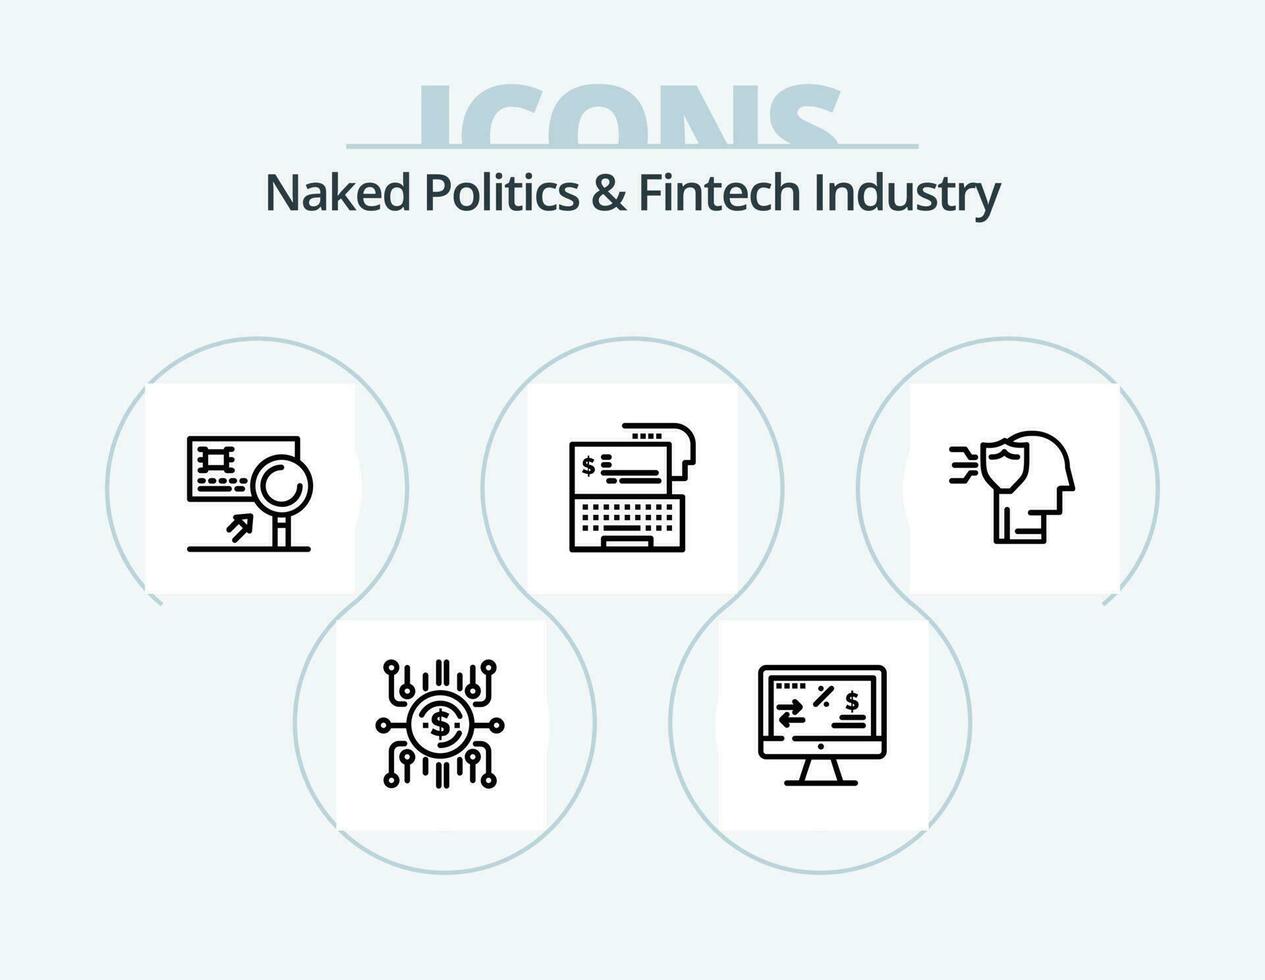 nu politique et fintech industrie ligne icône pack 5 icône conception. ordinateur. fintech industrie. crypto-monnaie. réforme. le revenu vecteur